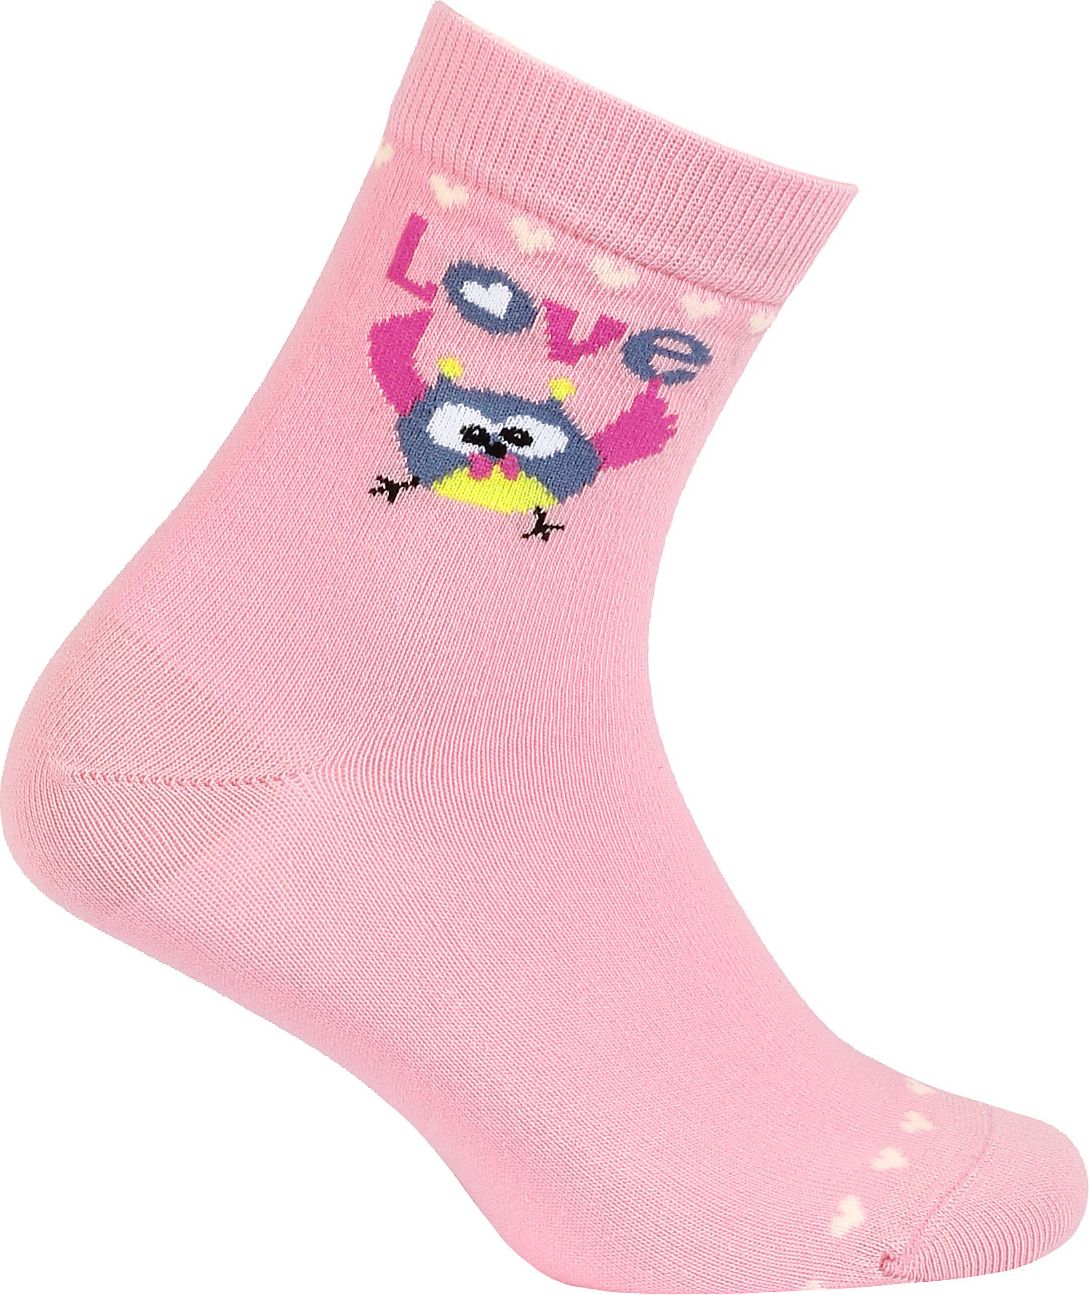 Dívčí ponožky se vzorem WOLA PTÁČEK LOVE růžové Velikost: 27-29 - obrázek 1